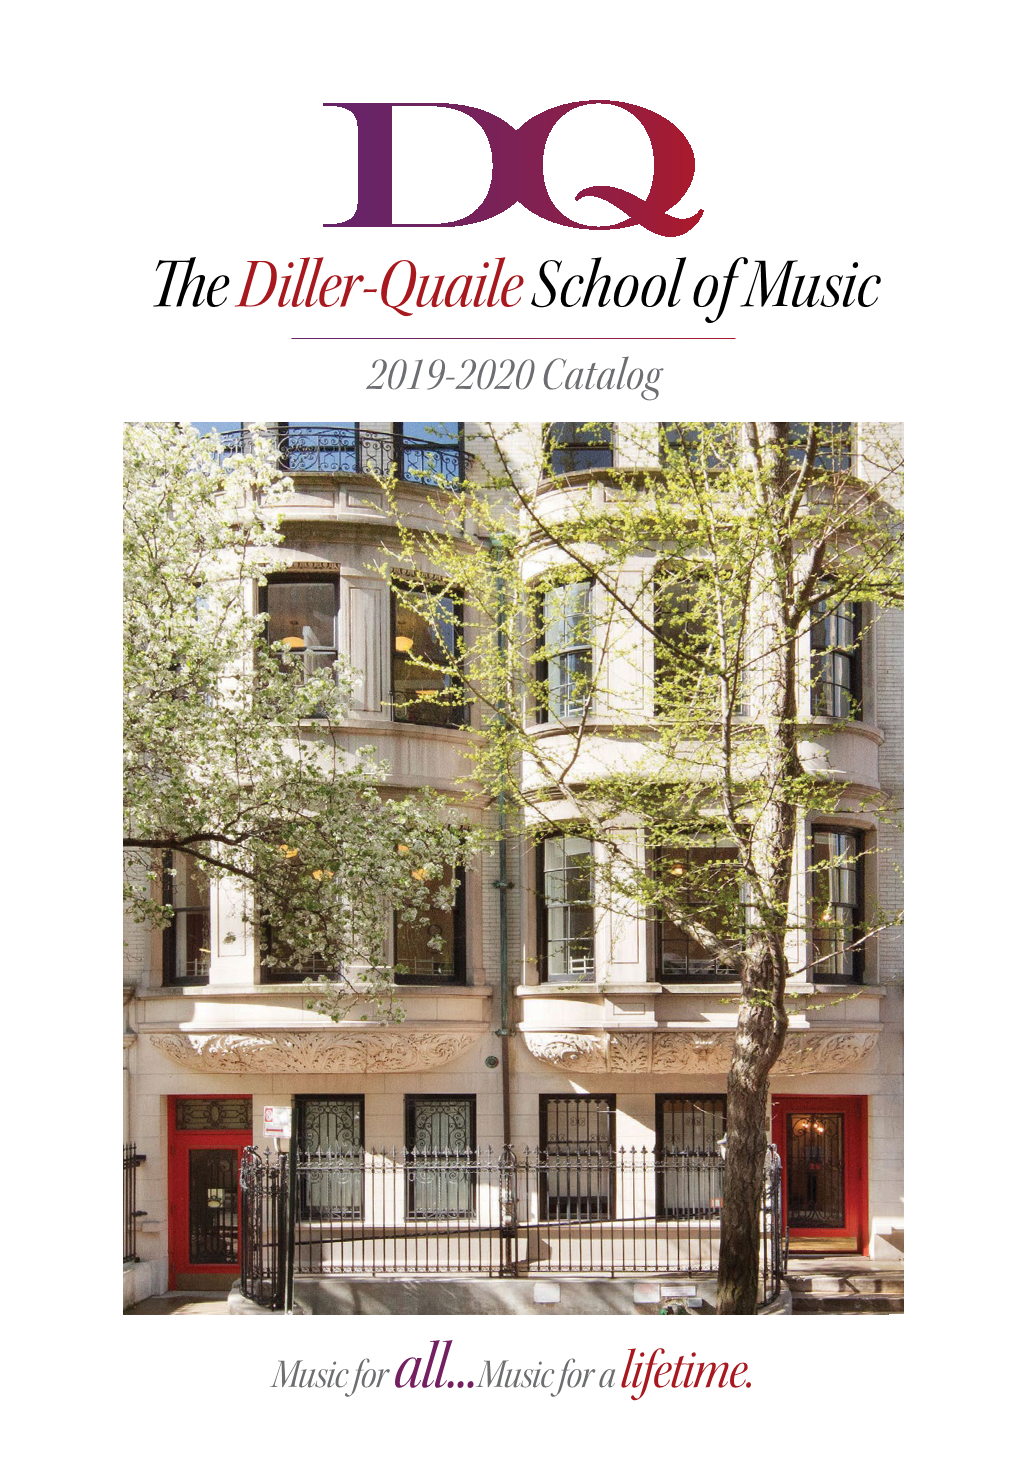 Thediller-Quaile School of Music